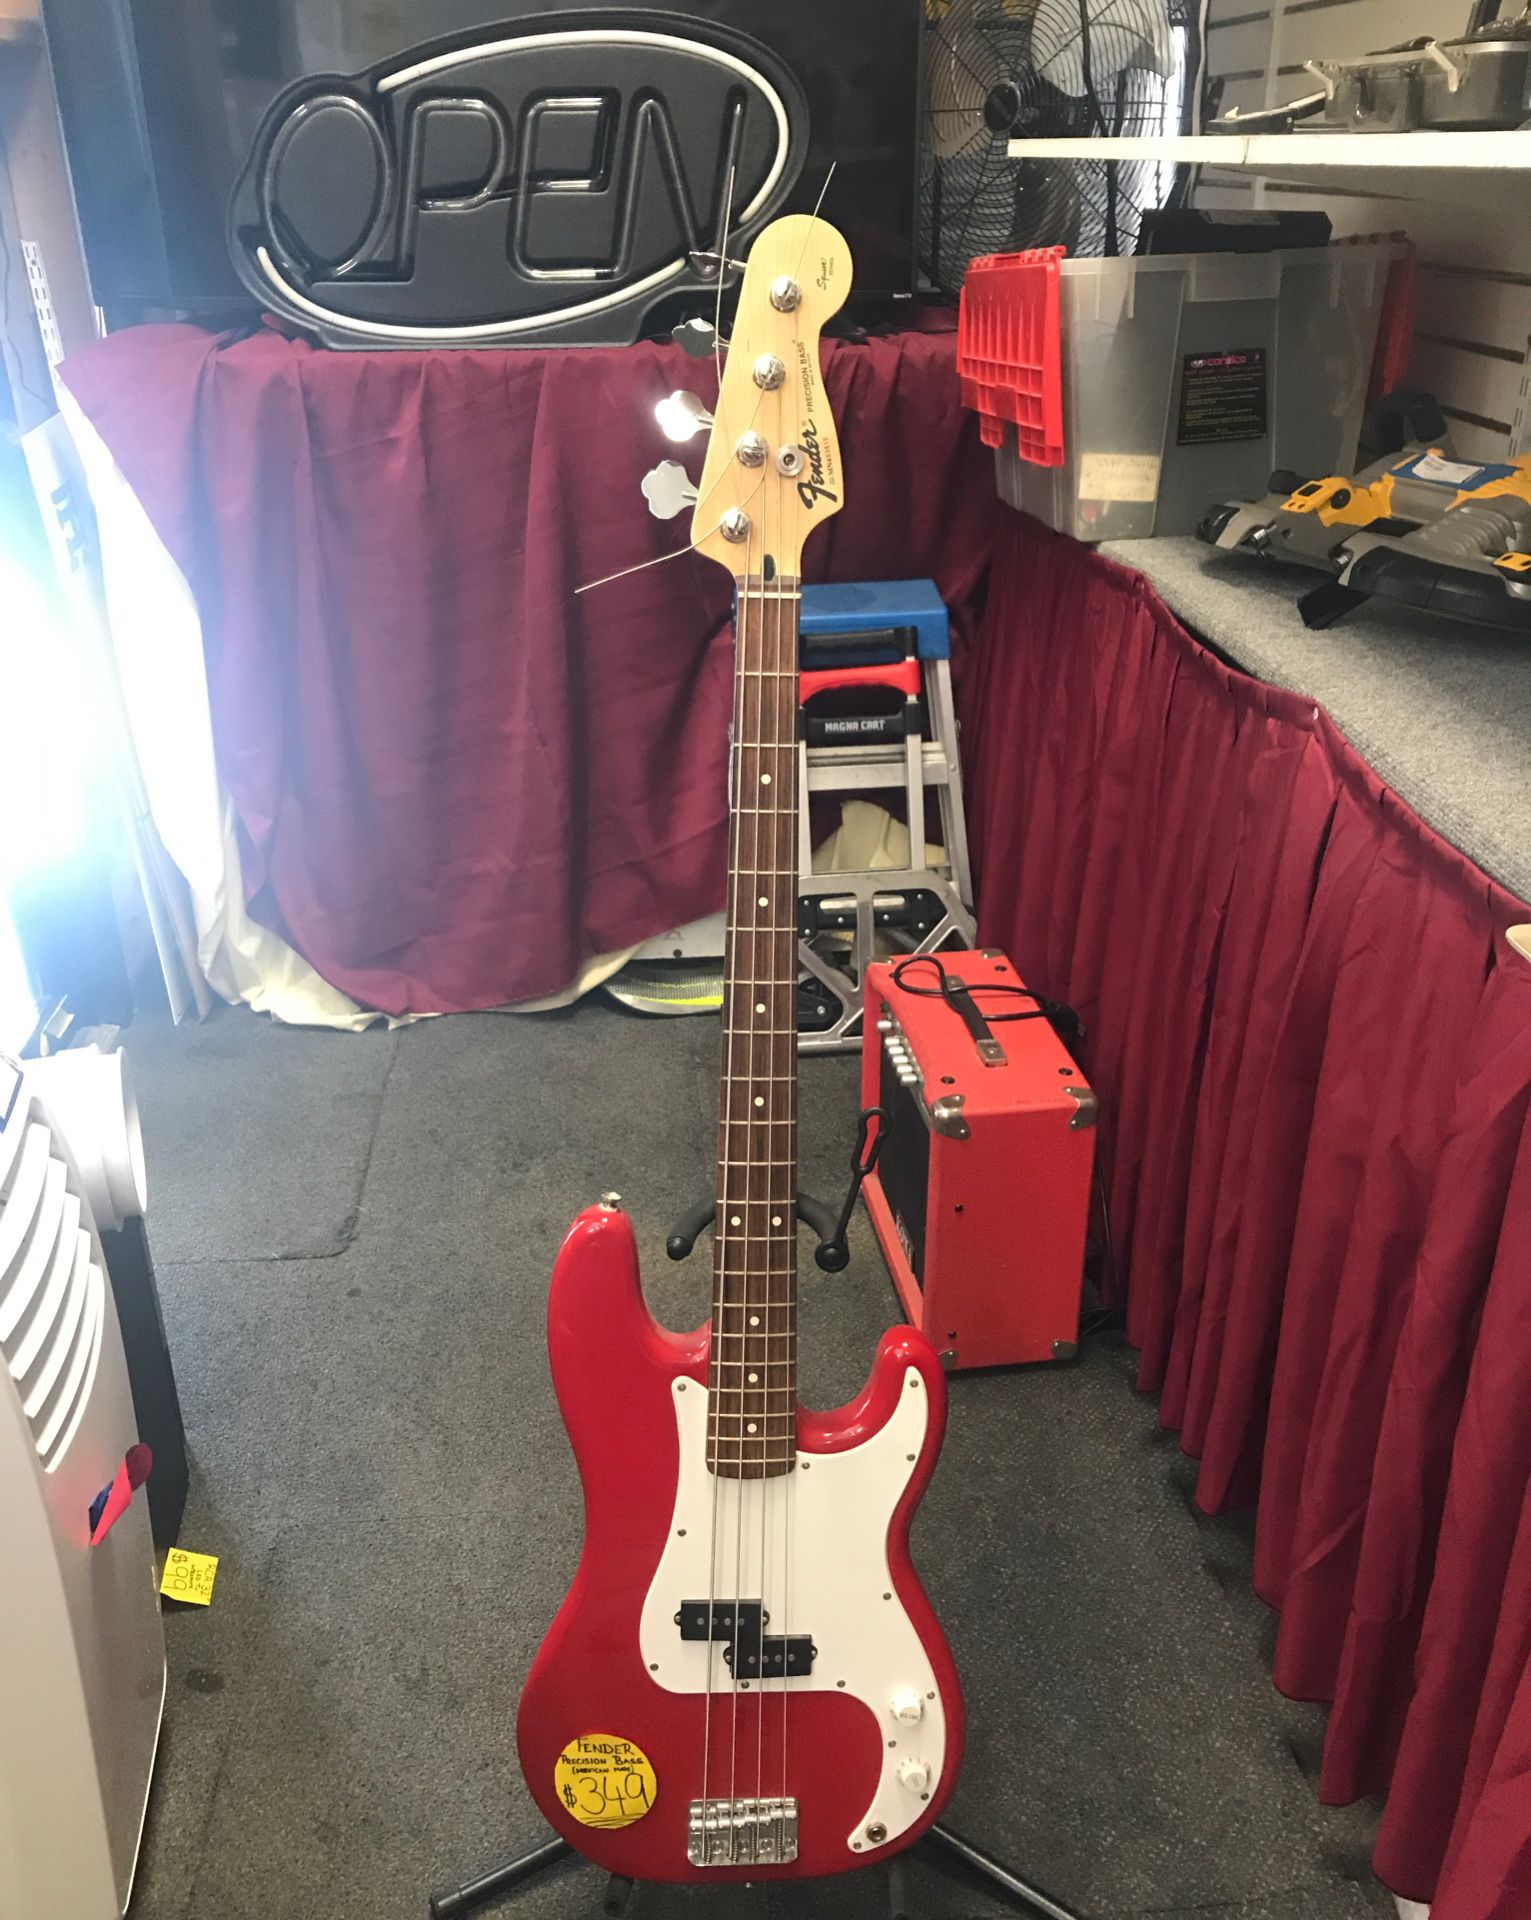 Fender precision bass guitar